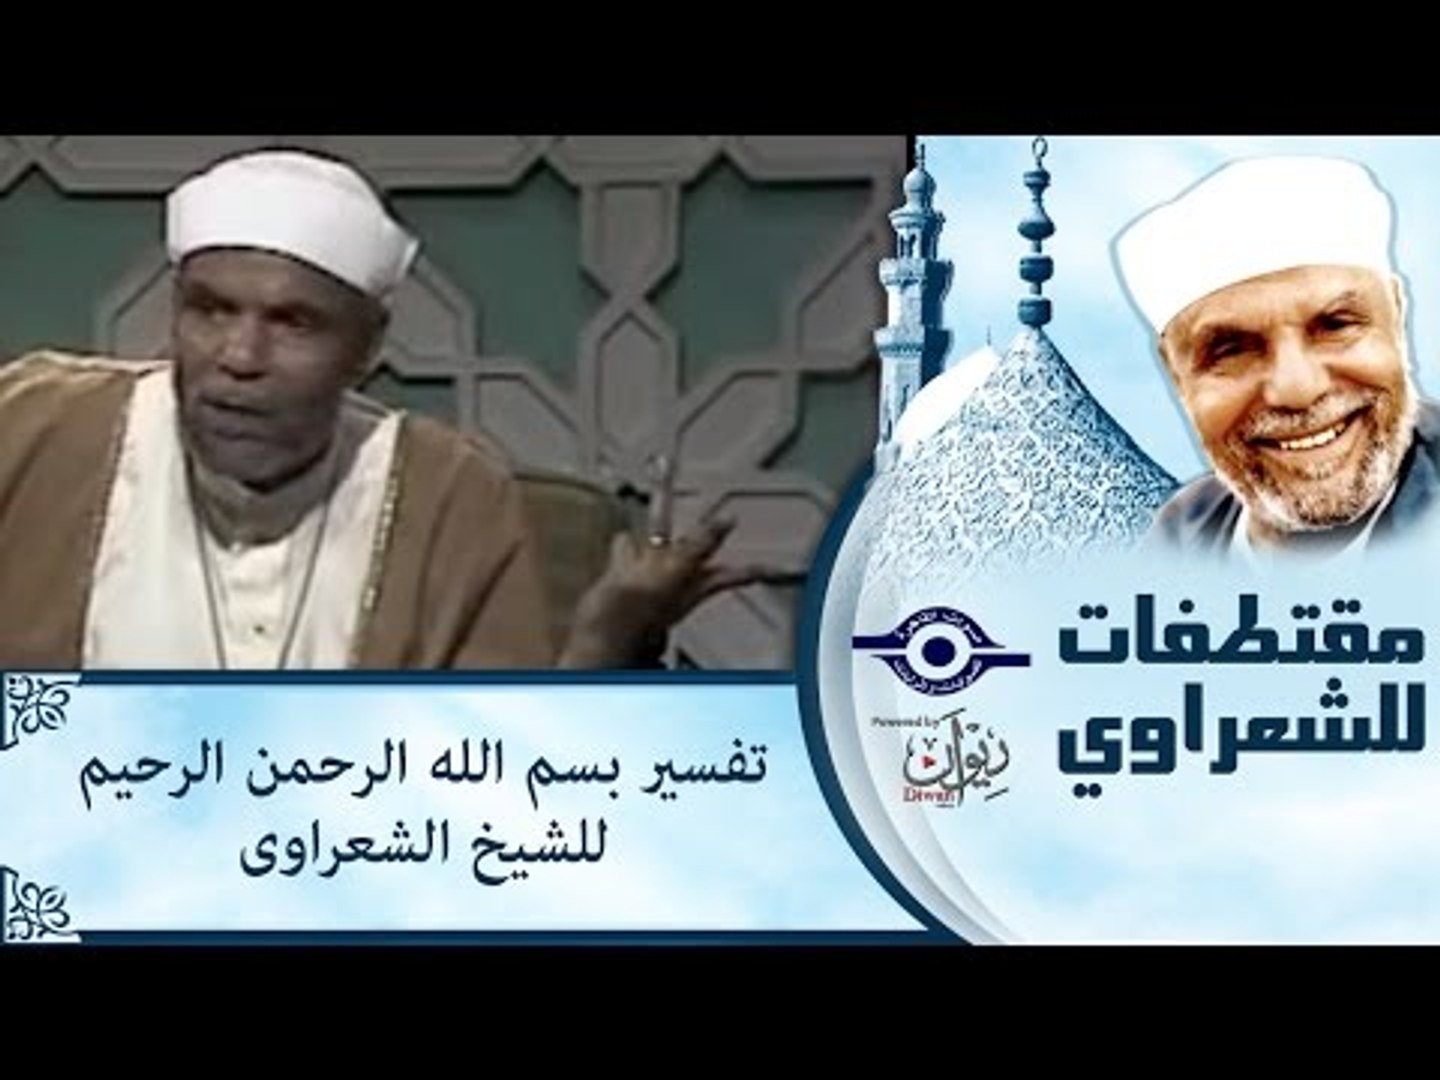 تفسير بسم الله الرحمن الرحيم للشيخ الشعراوى - video Dailymotion